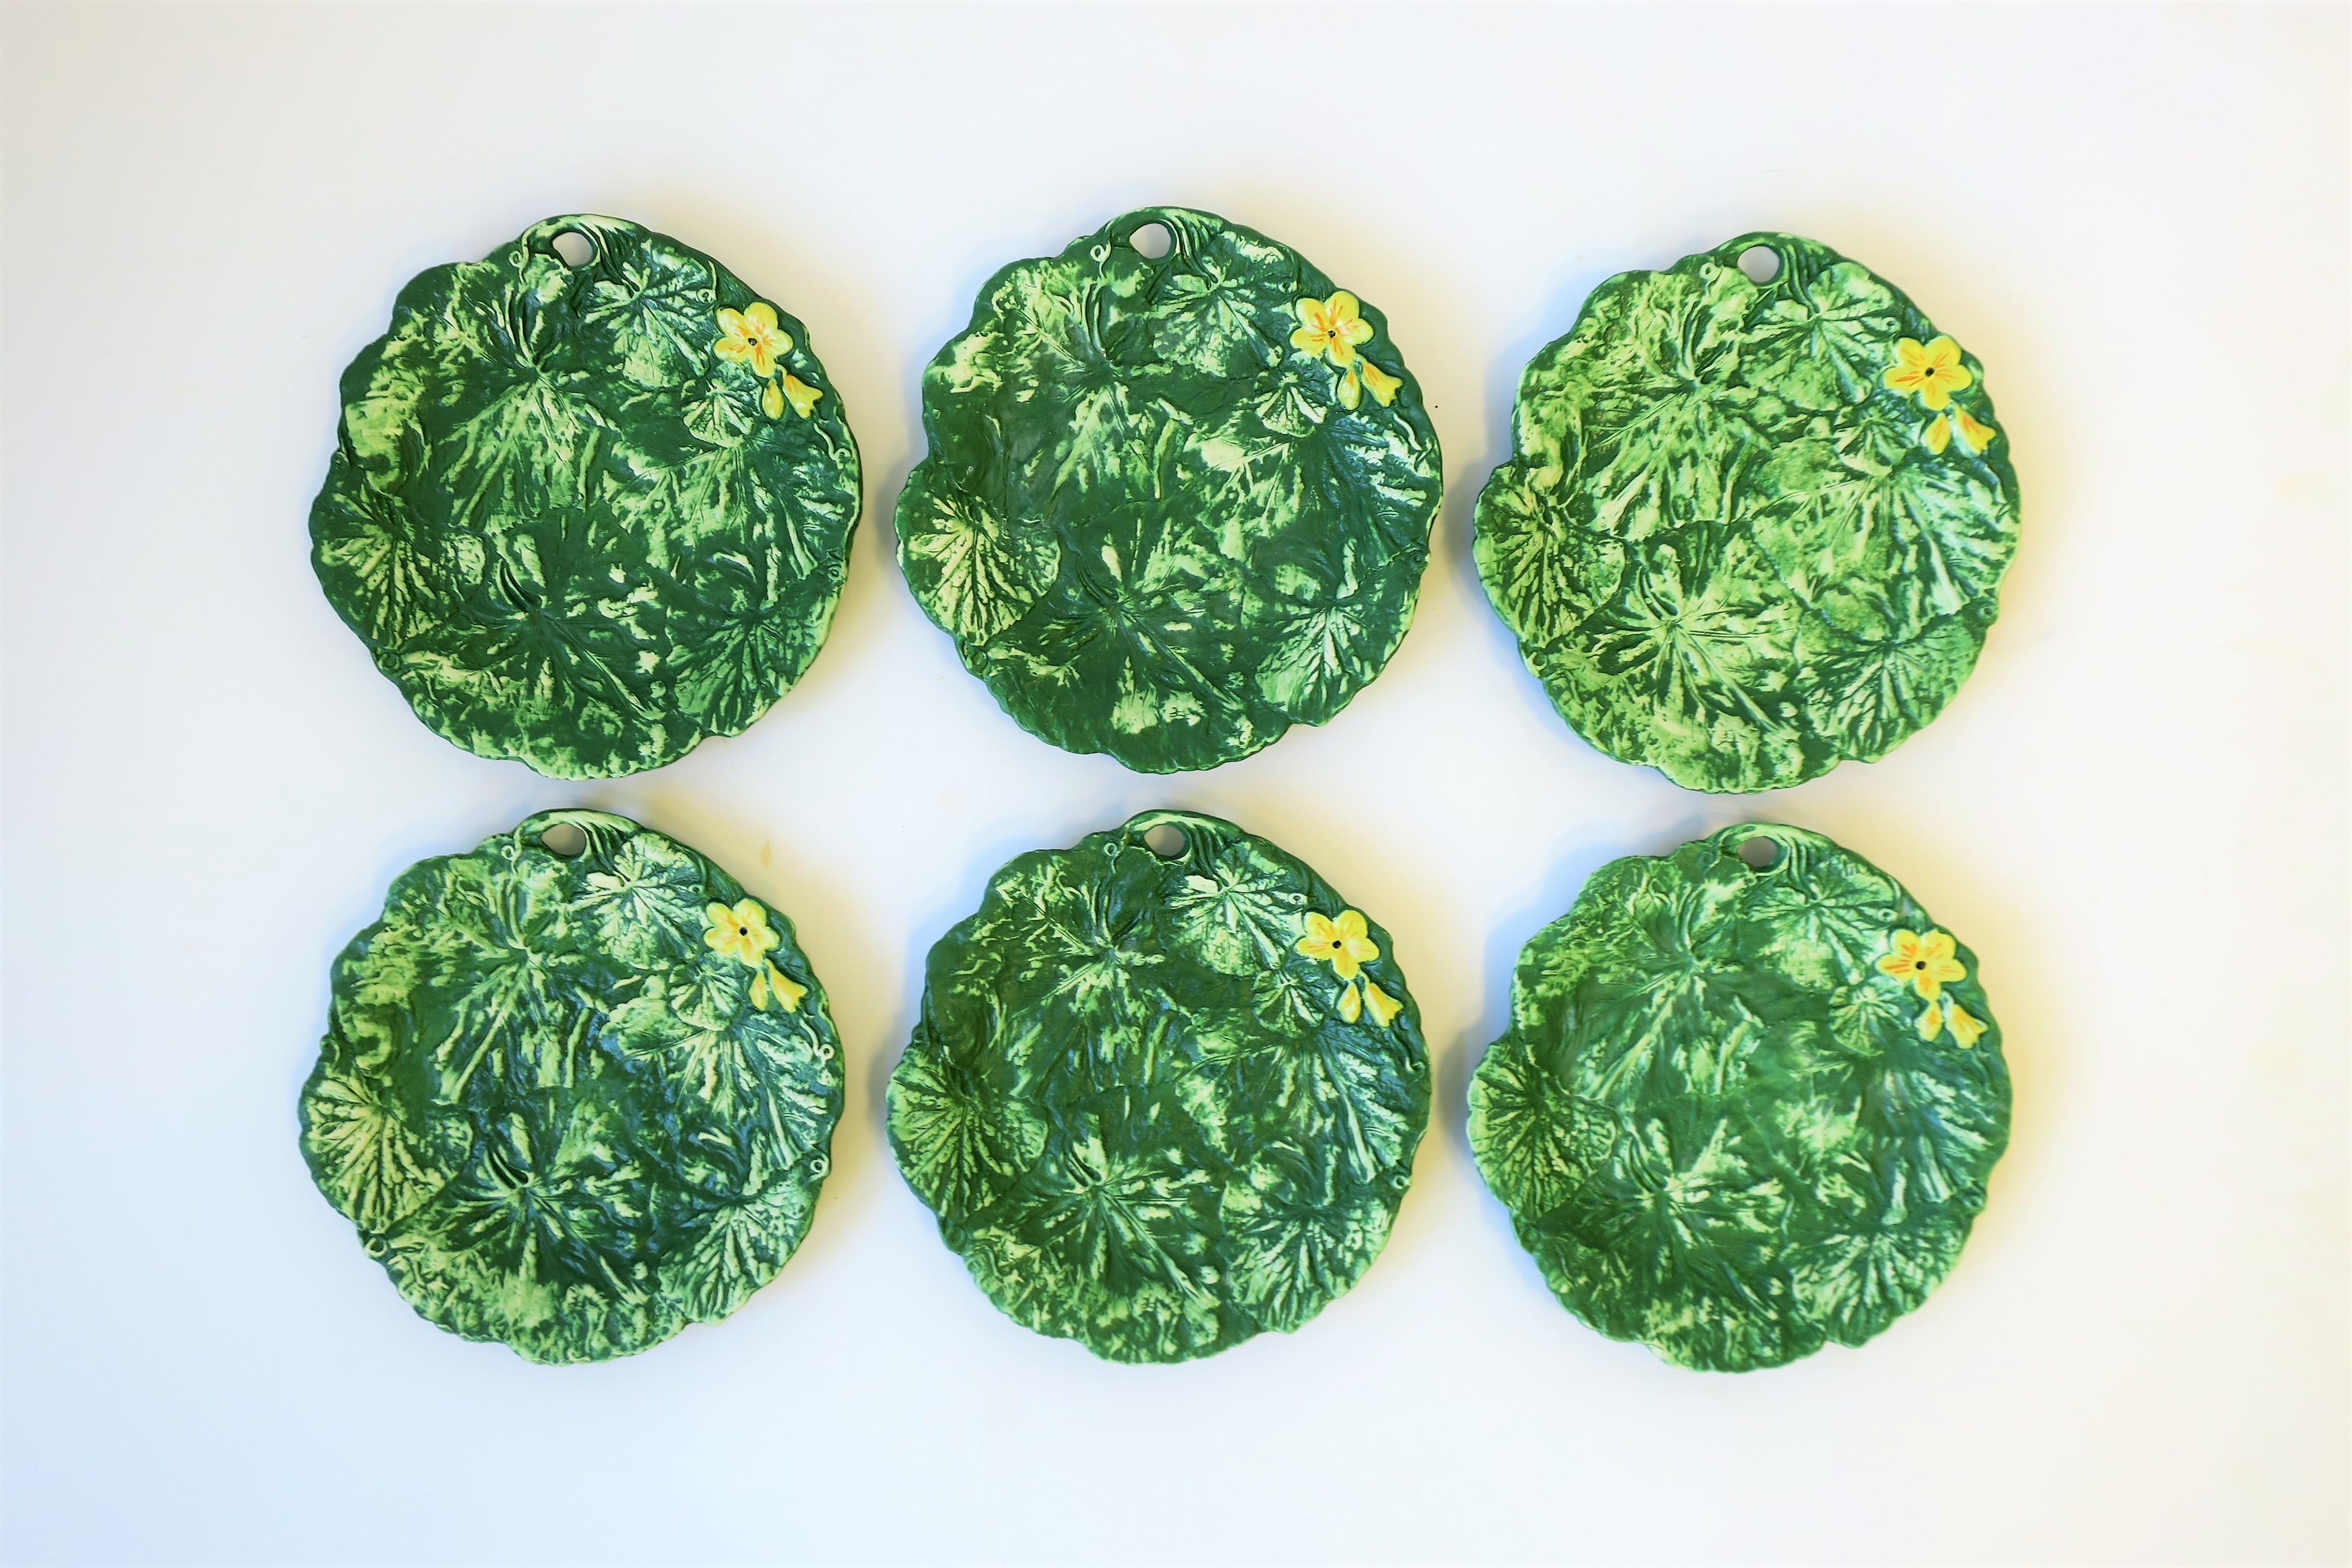 Un magnifique ensemble de six (6) assiettes italiennes en poterie mate verte et jaune avec des motifs de feuilles et de fleurs par le designer Ed Langbein, fabriquées en Italie, vers le milieu du 20e siècle. Les six plaques sont marquées au dos